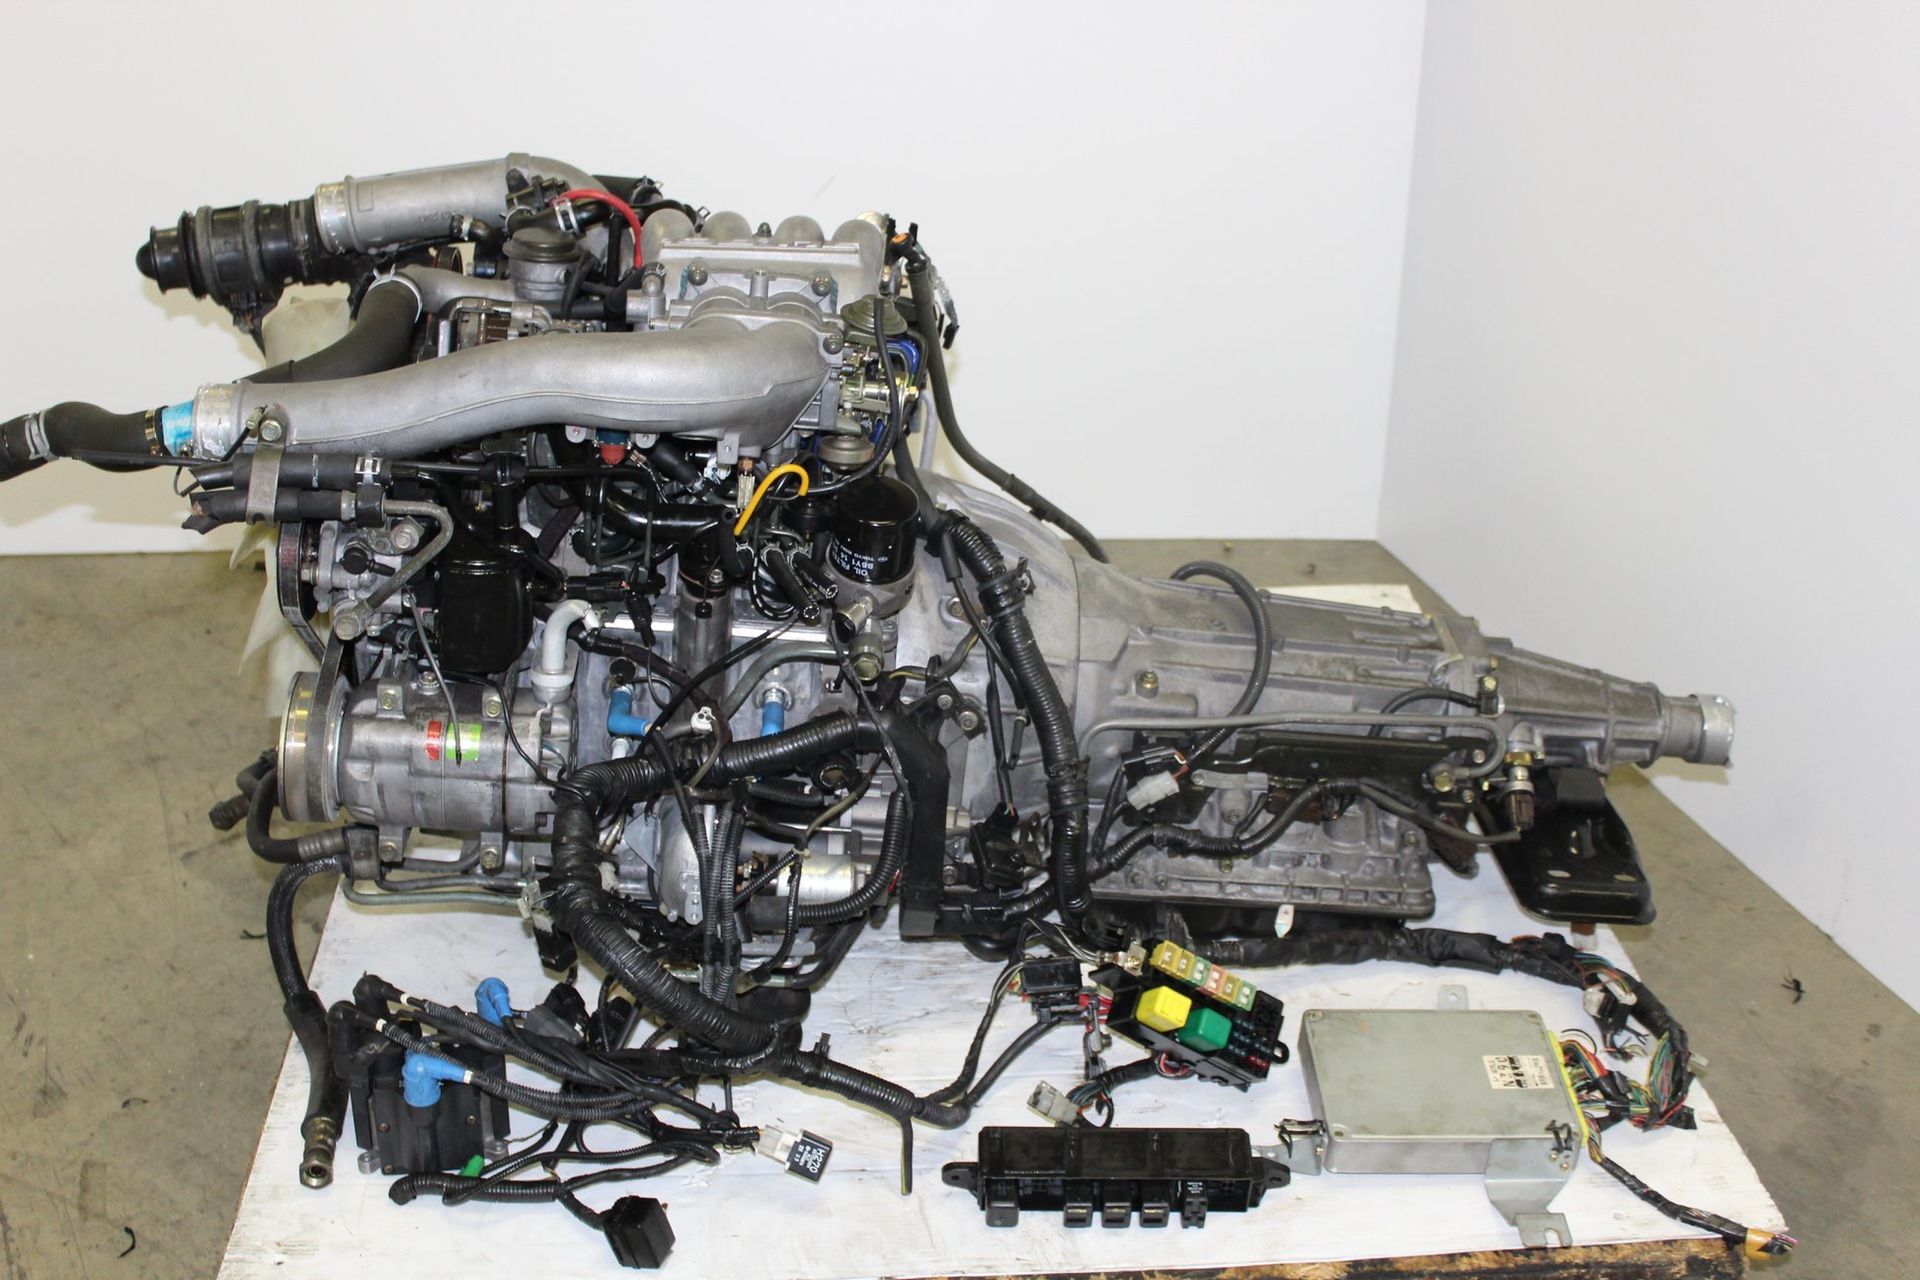 DM Mazda RX 7 FD 3 S 13 B Twin Turbo Engine 1.3 L Rotary 5 Speed Trans Wiring